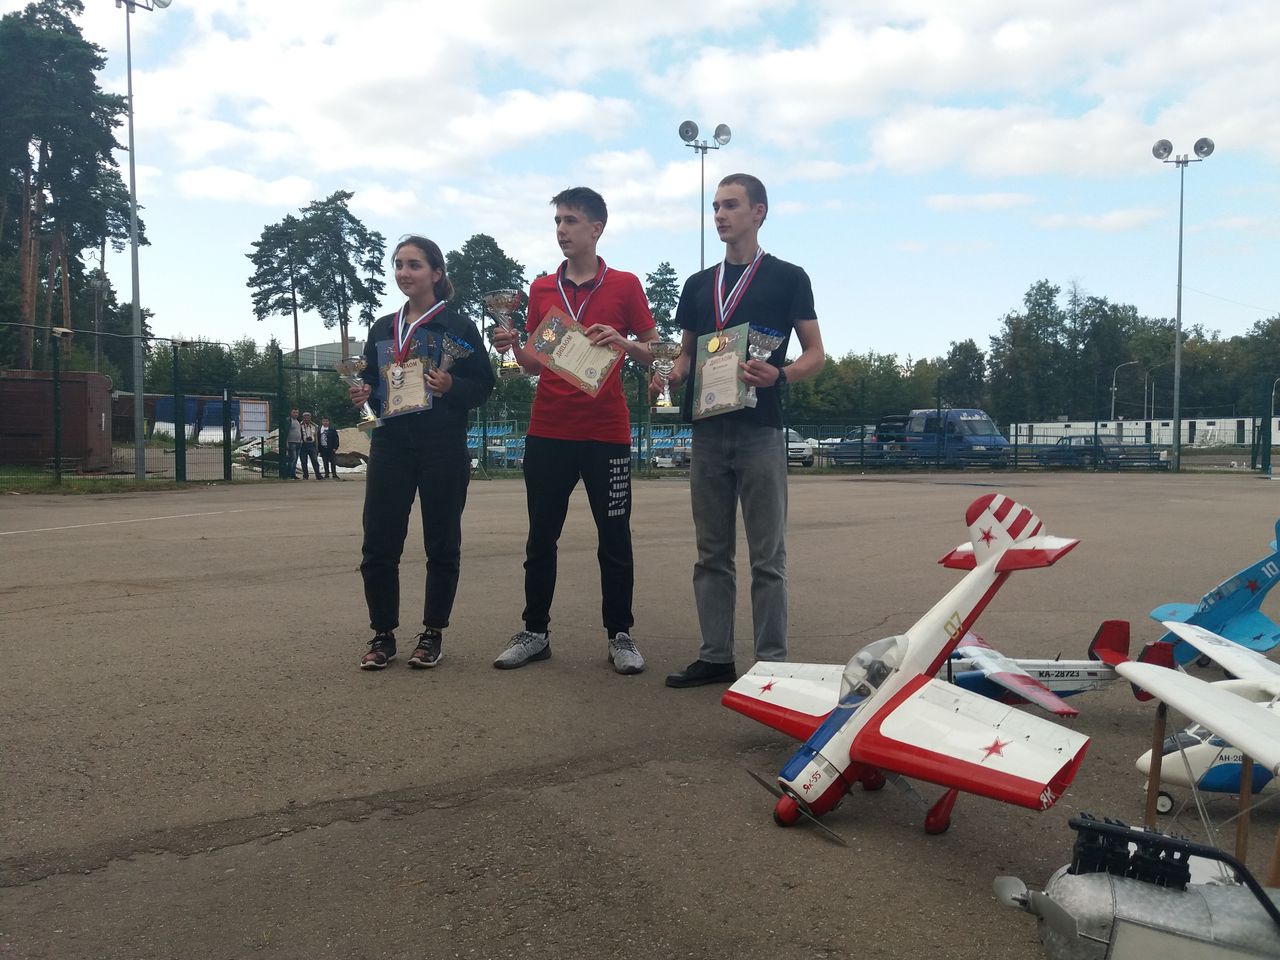 Команда авиамоделистов Центра детского творчества Серова успешно выступила на соревнованиях в Москве